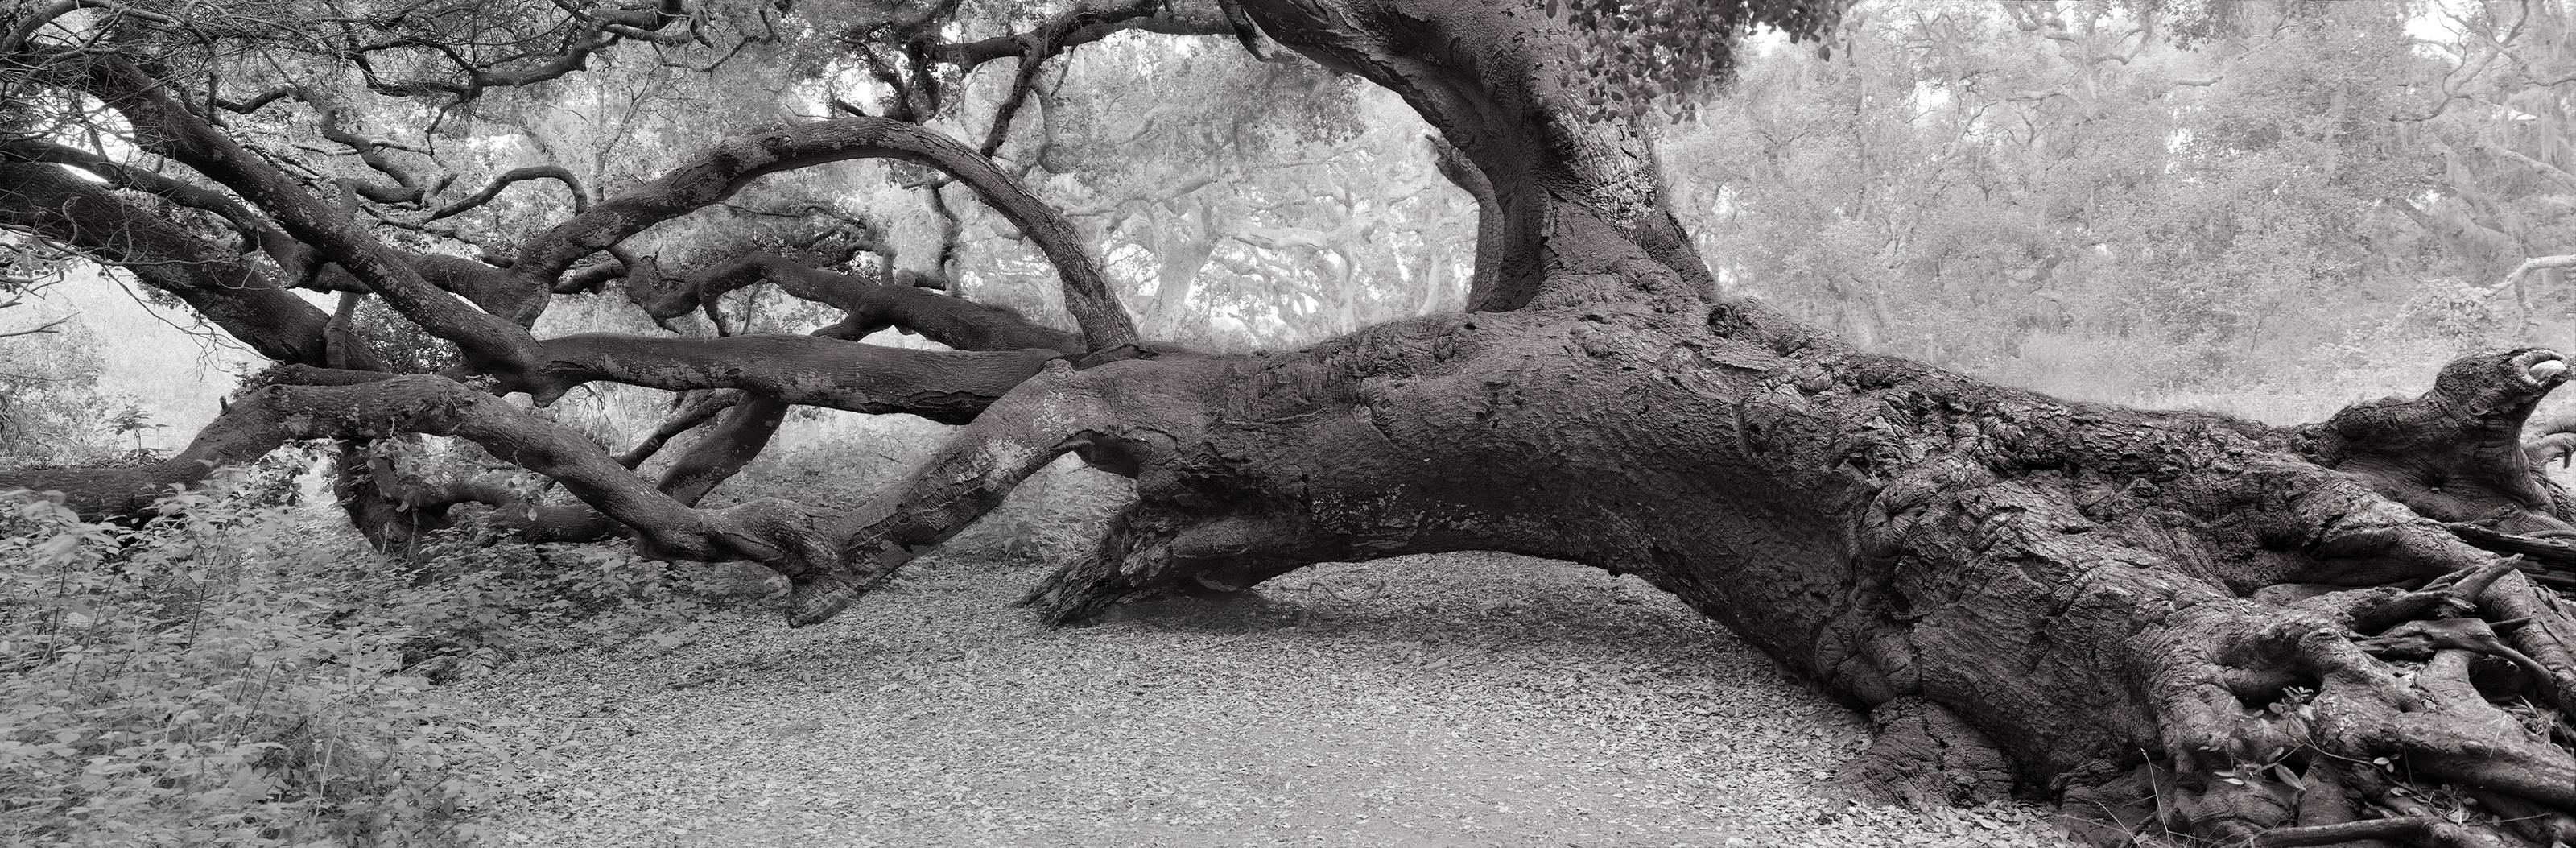 Ludo Leideritz Landscape Photograph - Leaning Oak